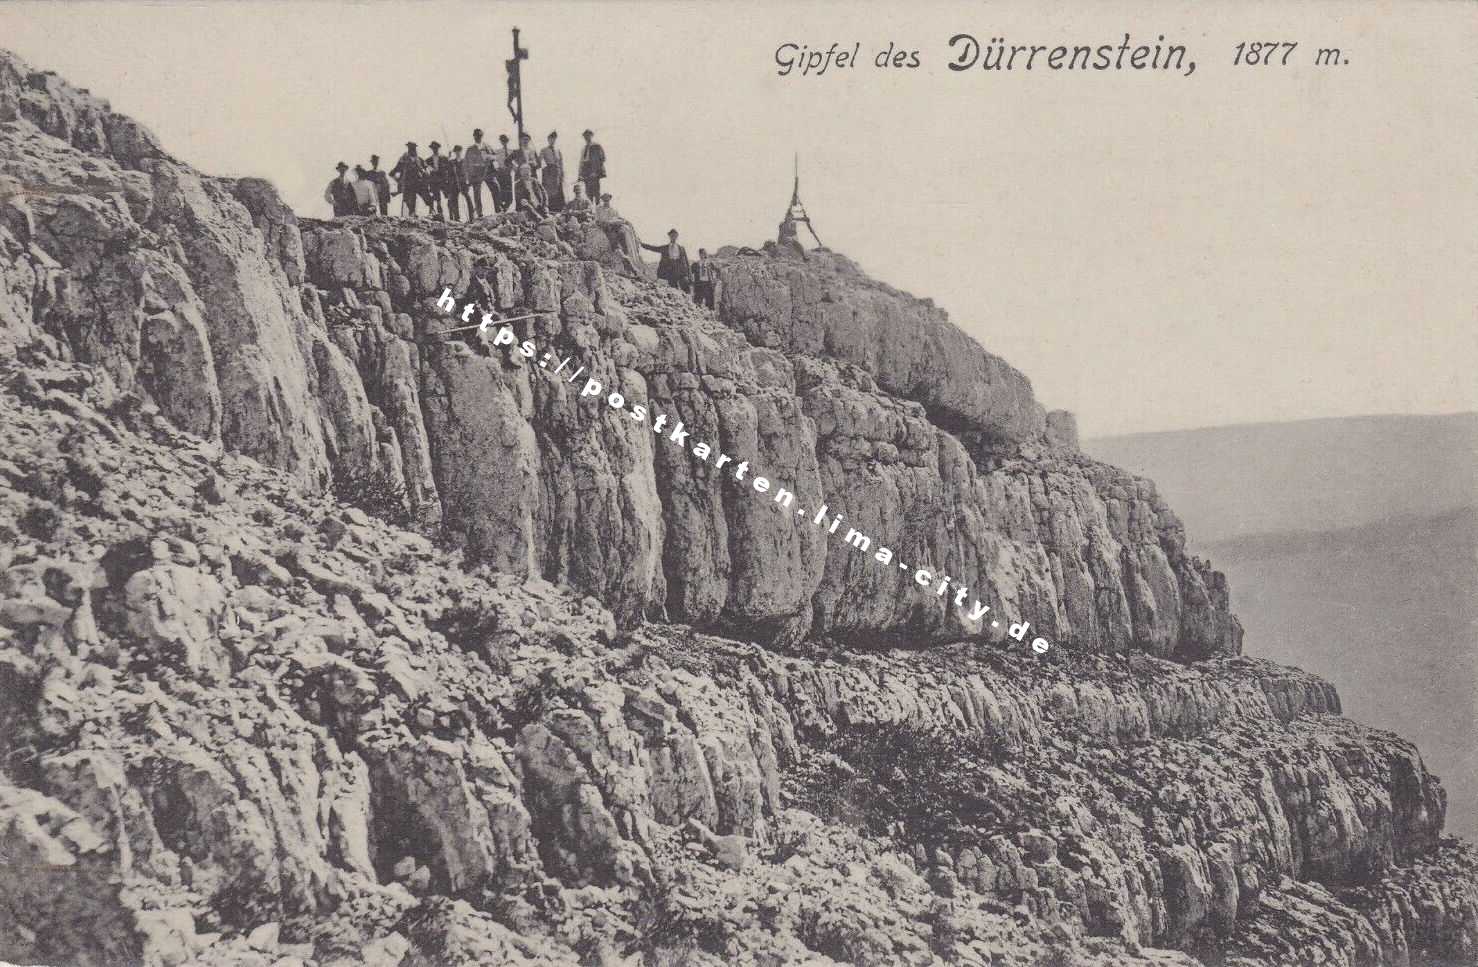 Lunz Dürrenstein 1926